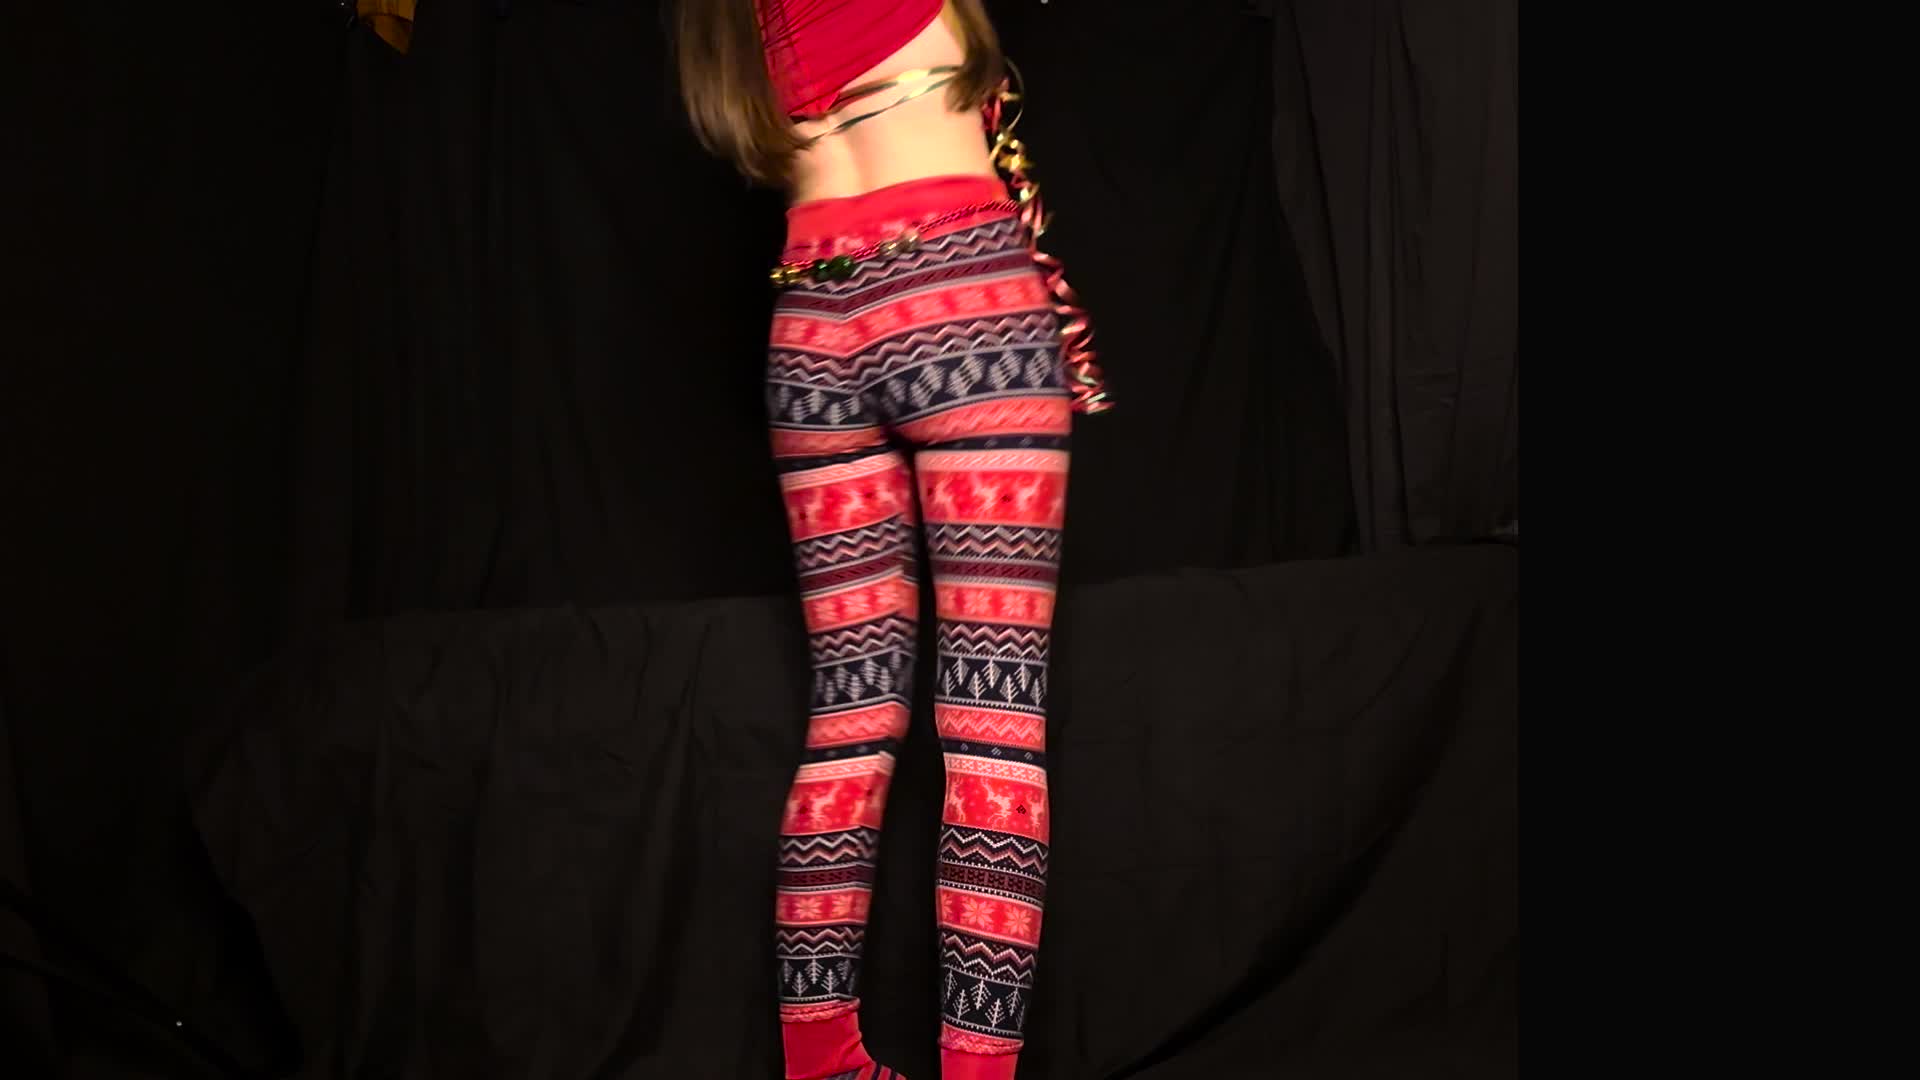 Girls in Leggings 🍑 on X: The leggings cameltoe of @natybond_of looks  really good!  / X